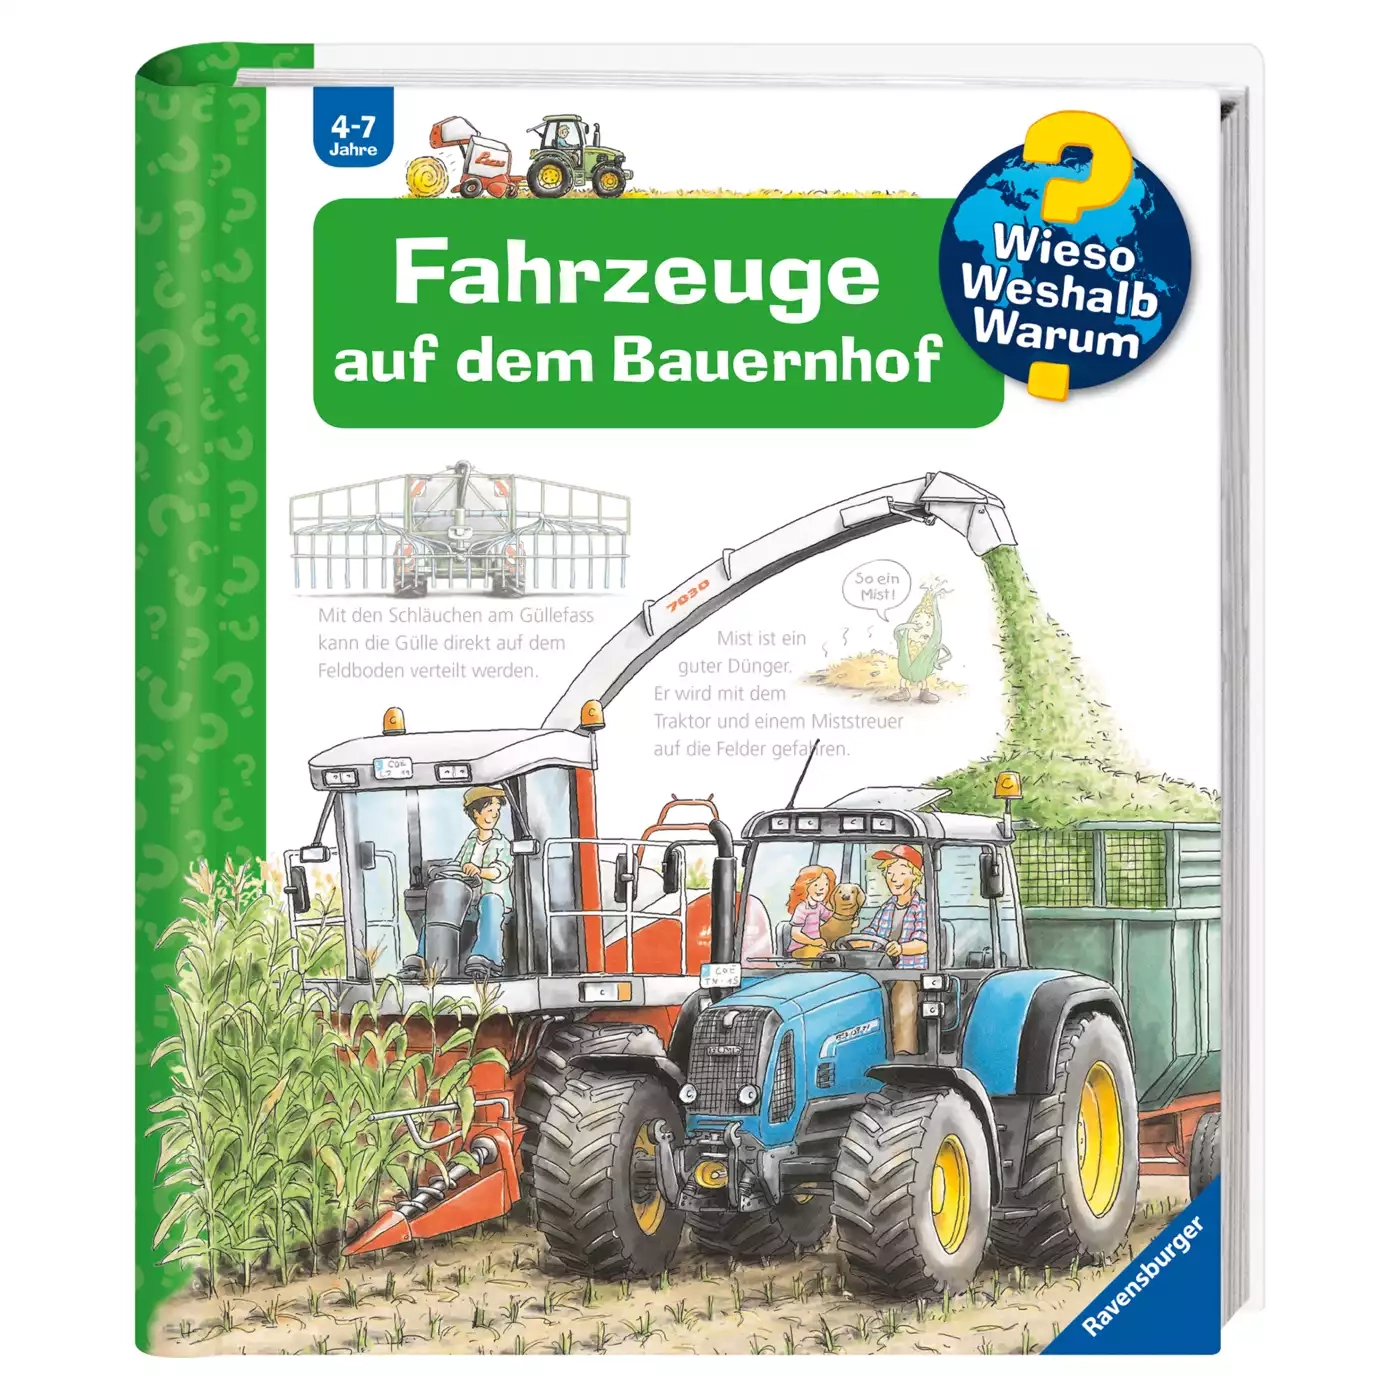 WWW Fahrzeuge auf dem Bauernhof Ravensburger 2000555186806 1